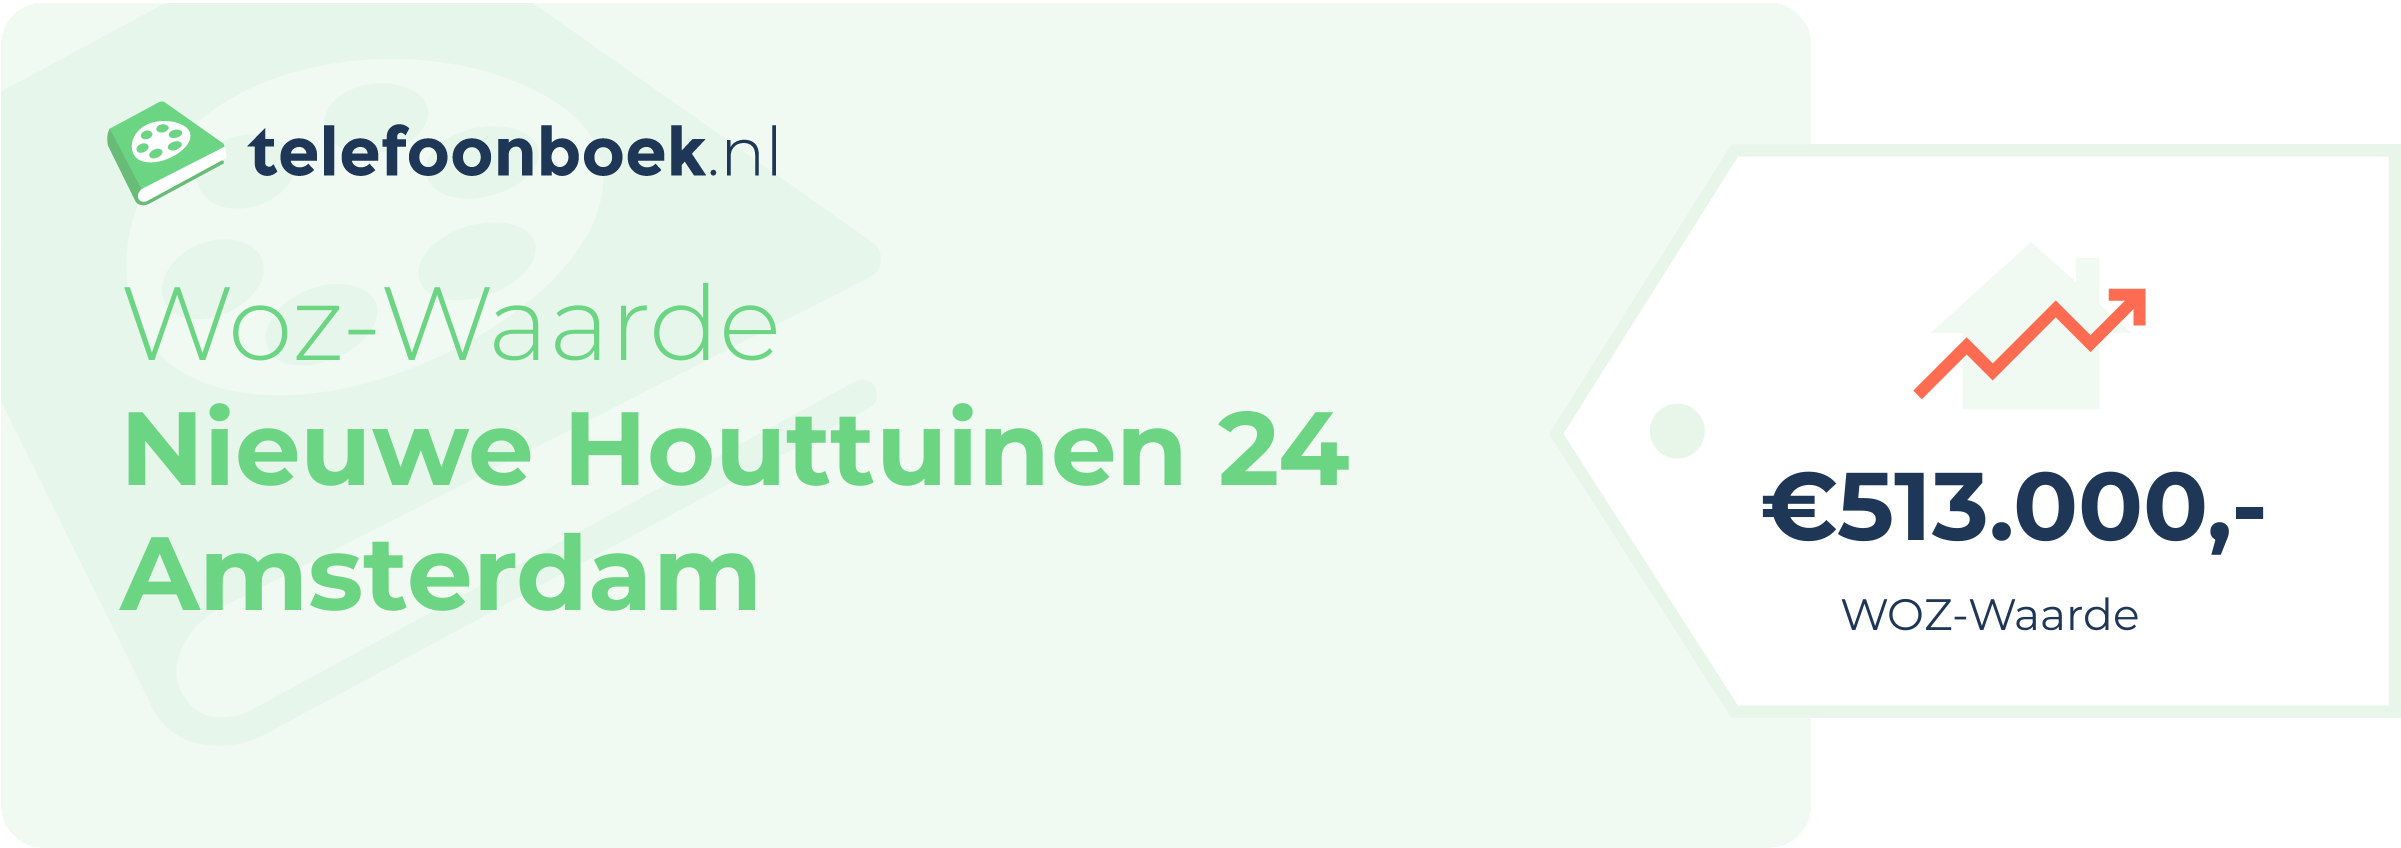 WOZ-waarde Nieuwe Houttuinen 24 Amsterdam